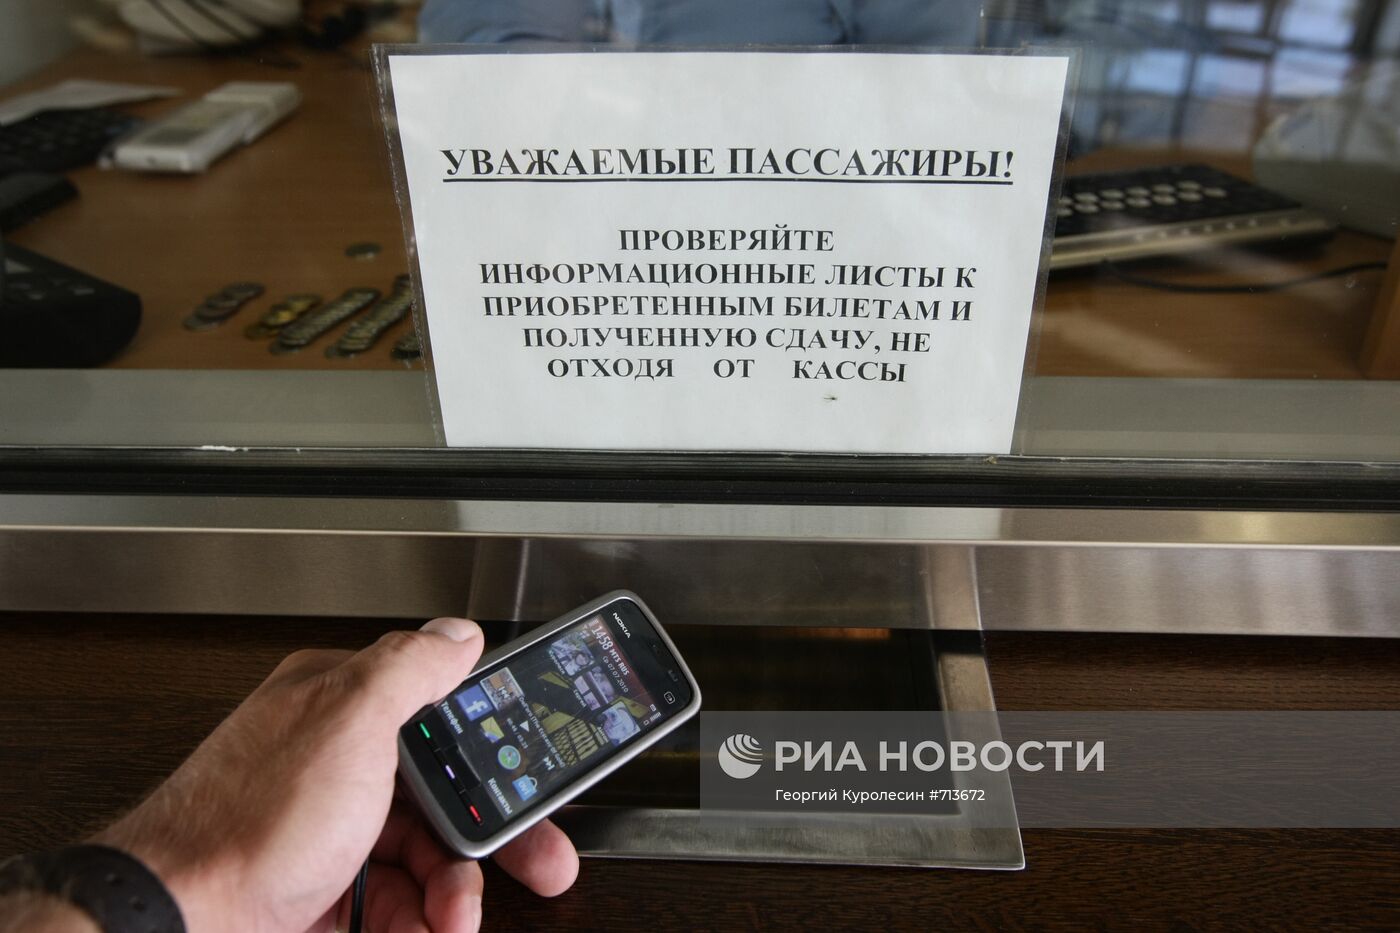 Новые технологии оплаты проезда в московском метро